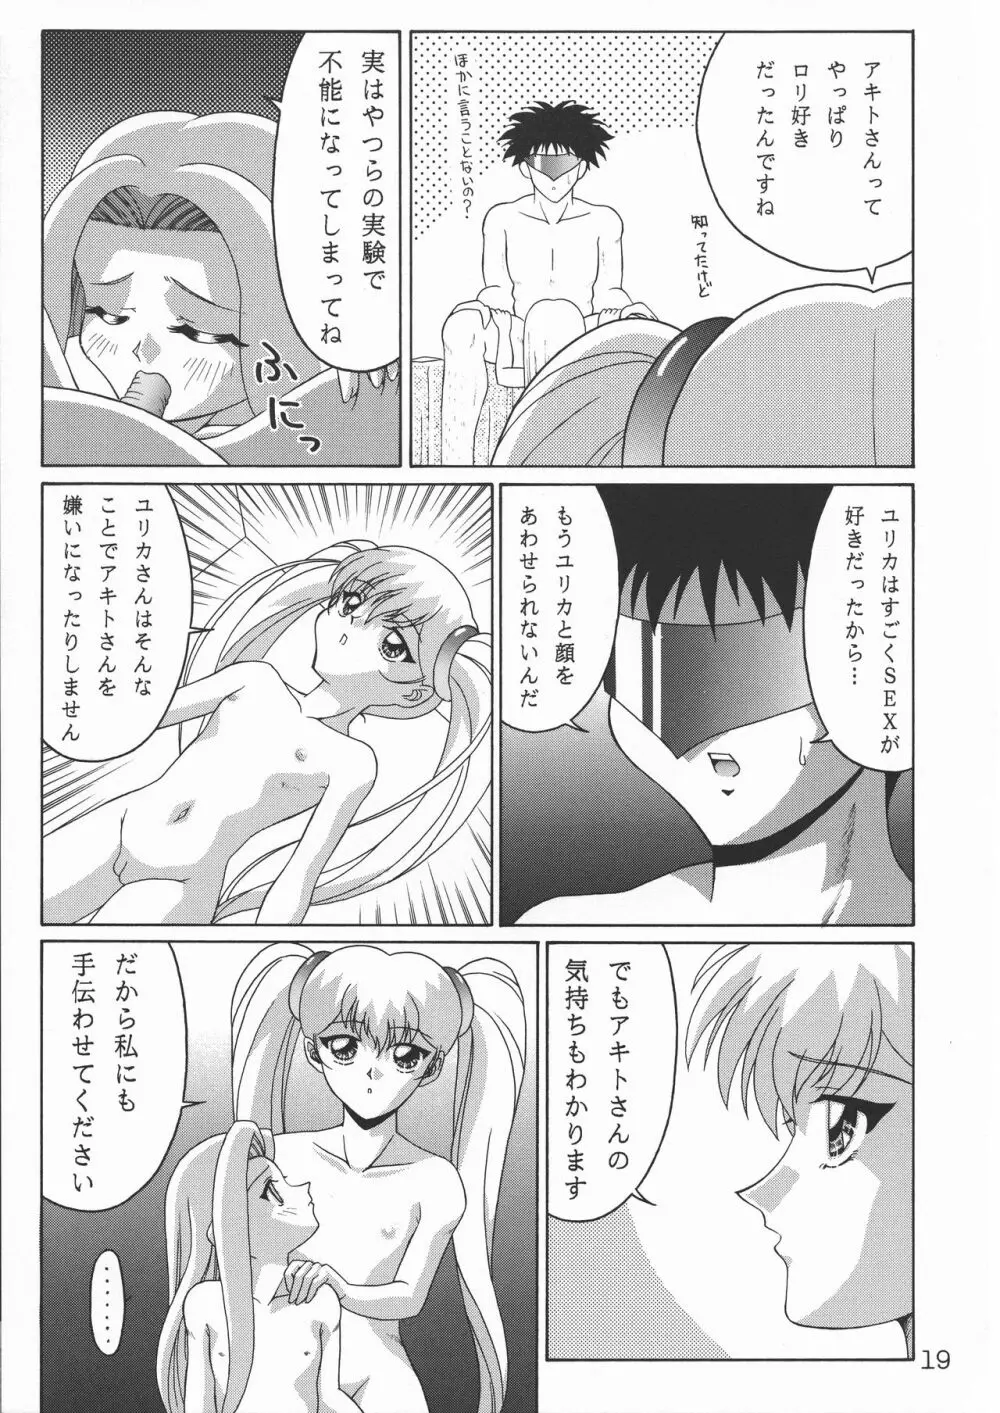 TOKUTEI 9 19ページ